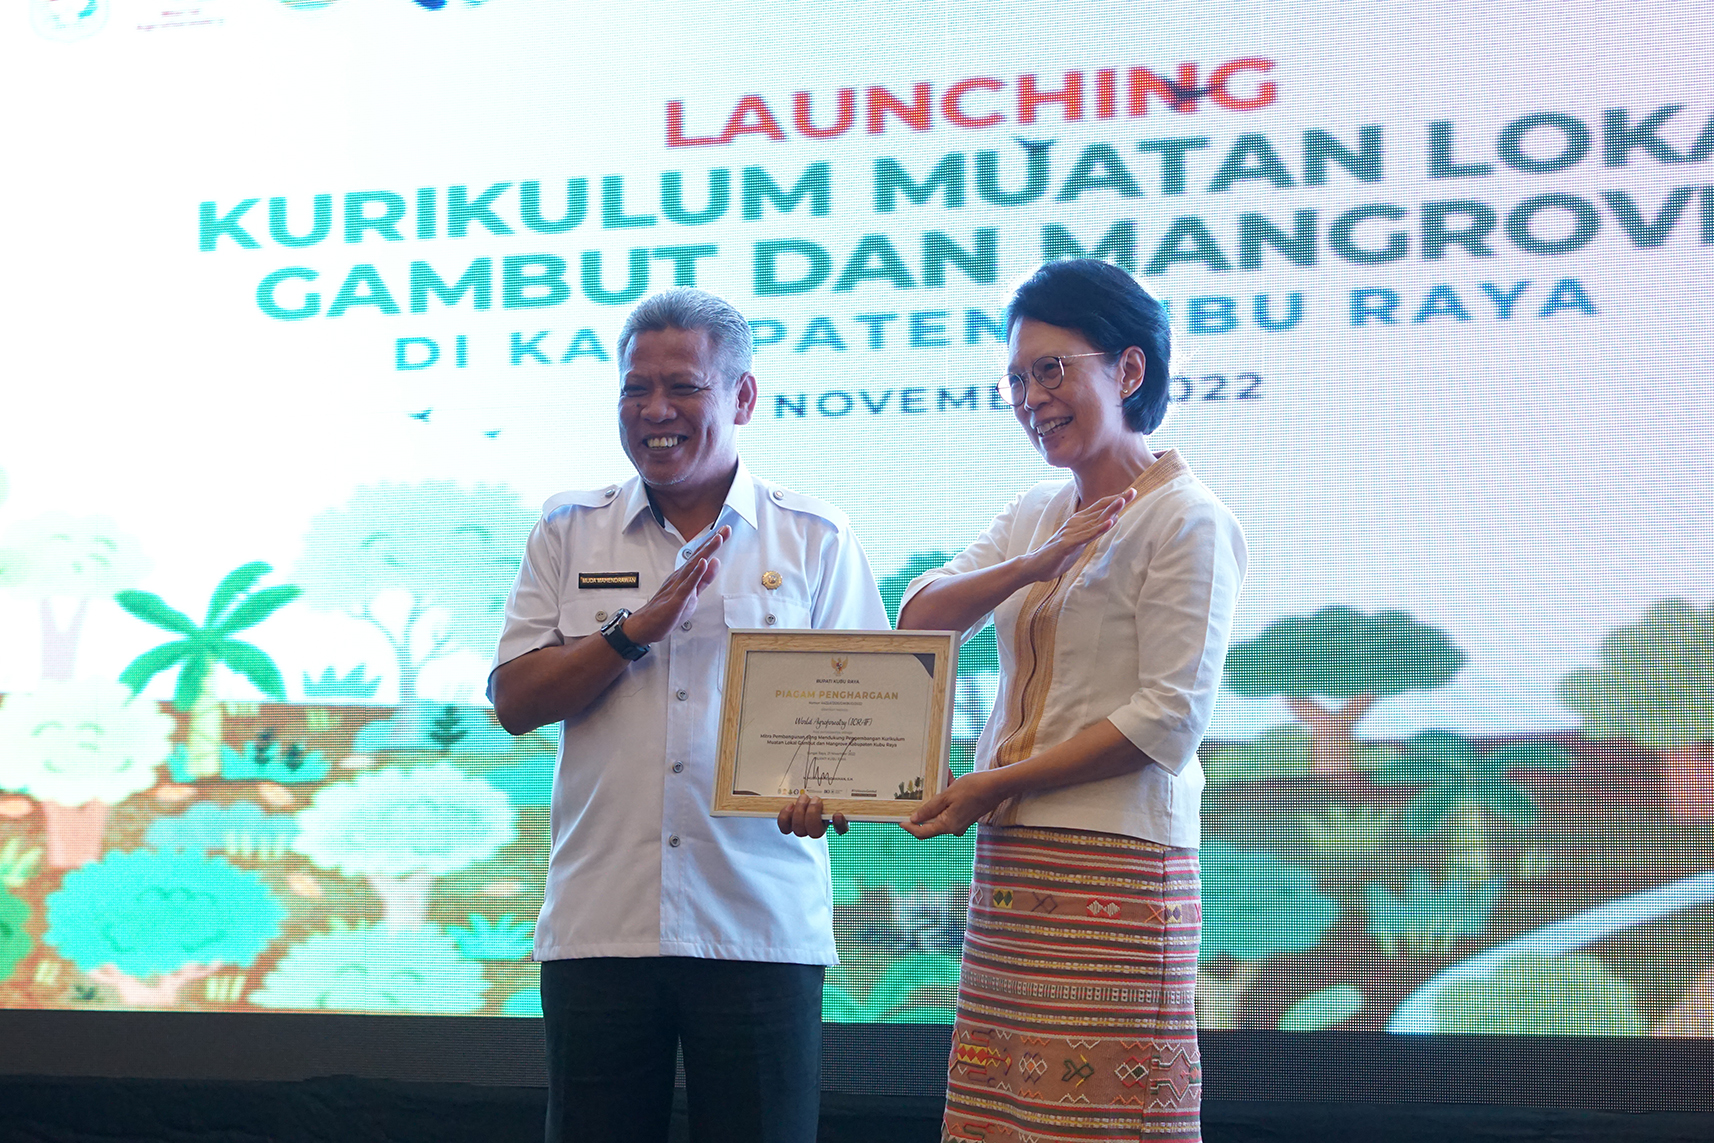 UNTUK GENERASI MASA DEPAN: Launching Kurikulum Muatan Lokal Gambut dan Mangrove di Kabupaten Kubu Raya